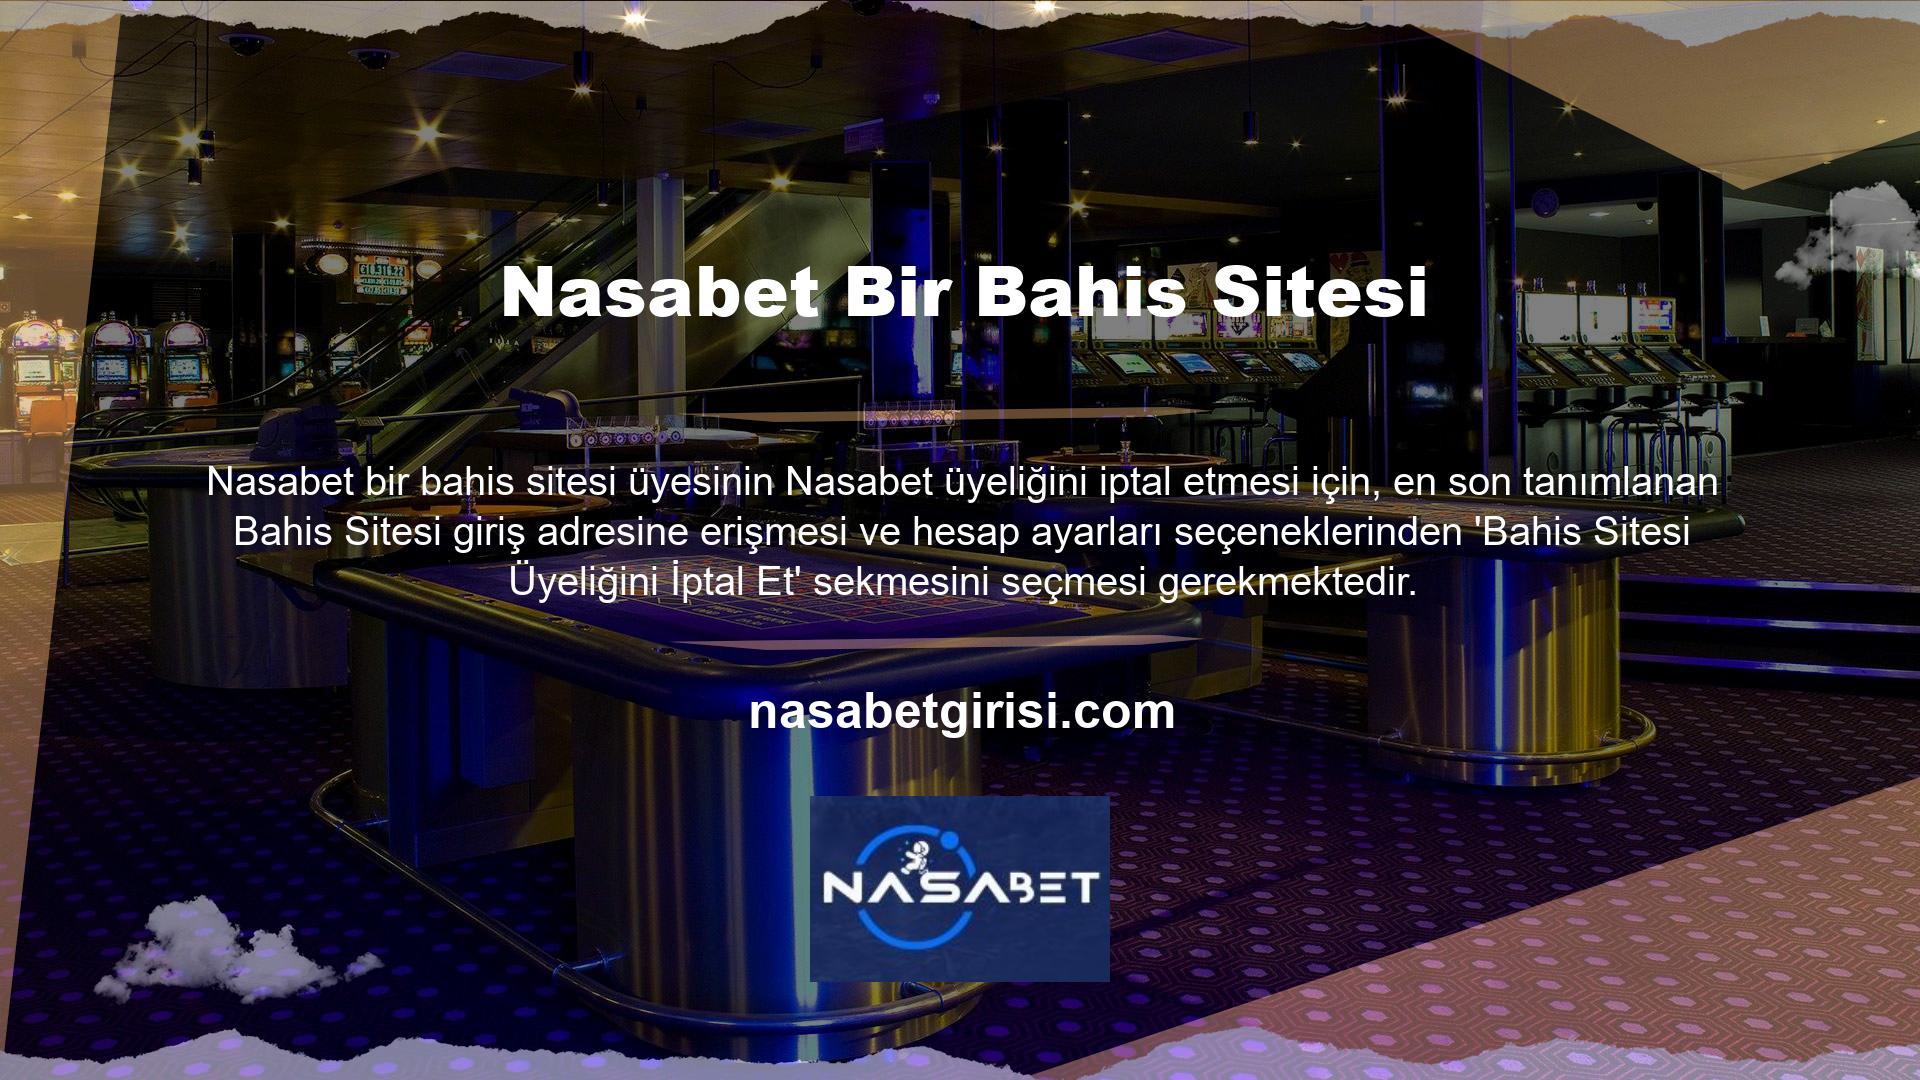 Bir bahis sitesi üyesi, Nasabet bahis sitesi üzerinden üyelik işlemini tamamlamak isterse, bahis sitesi tarafından belirlenen tüm bahis bonuslarını ve bonusları tüketmelidir